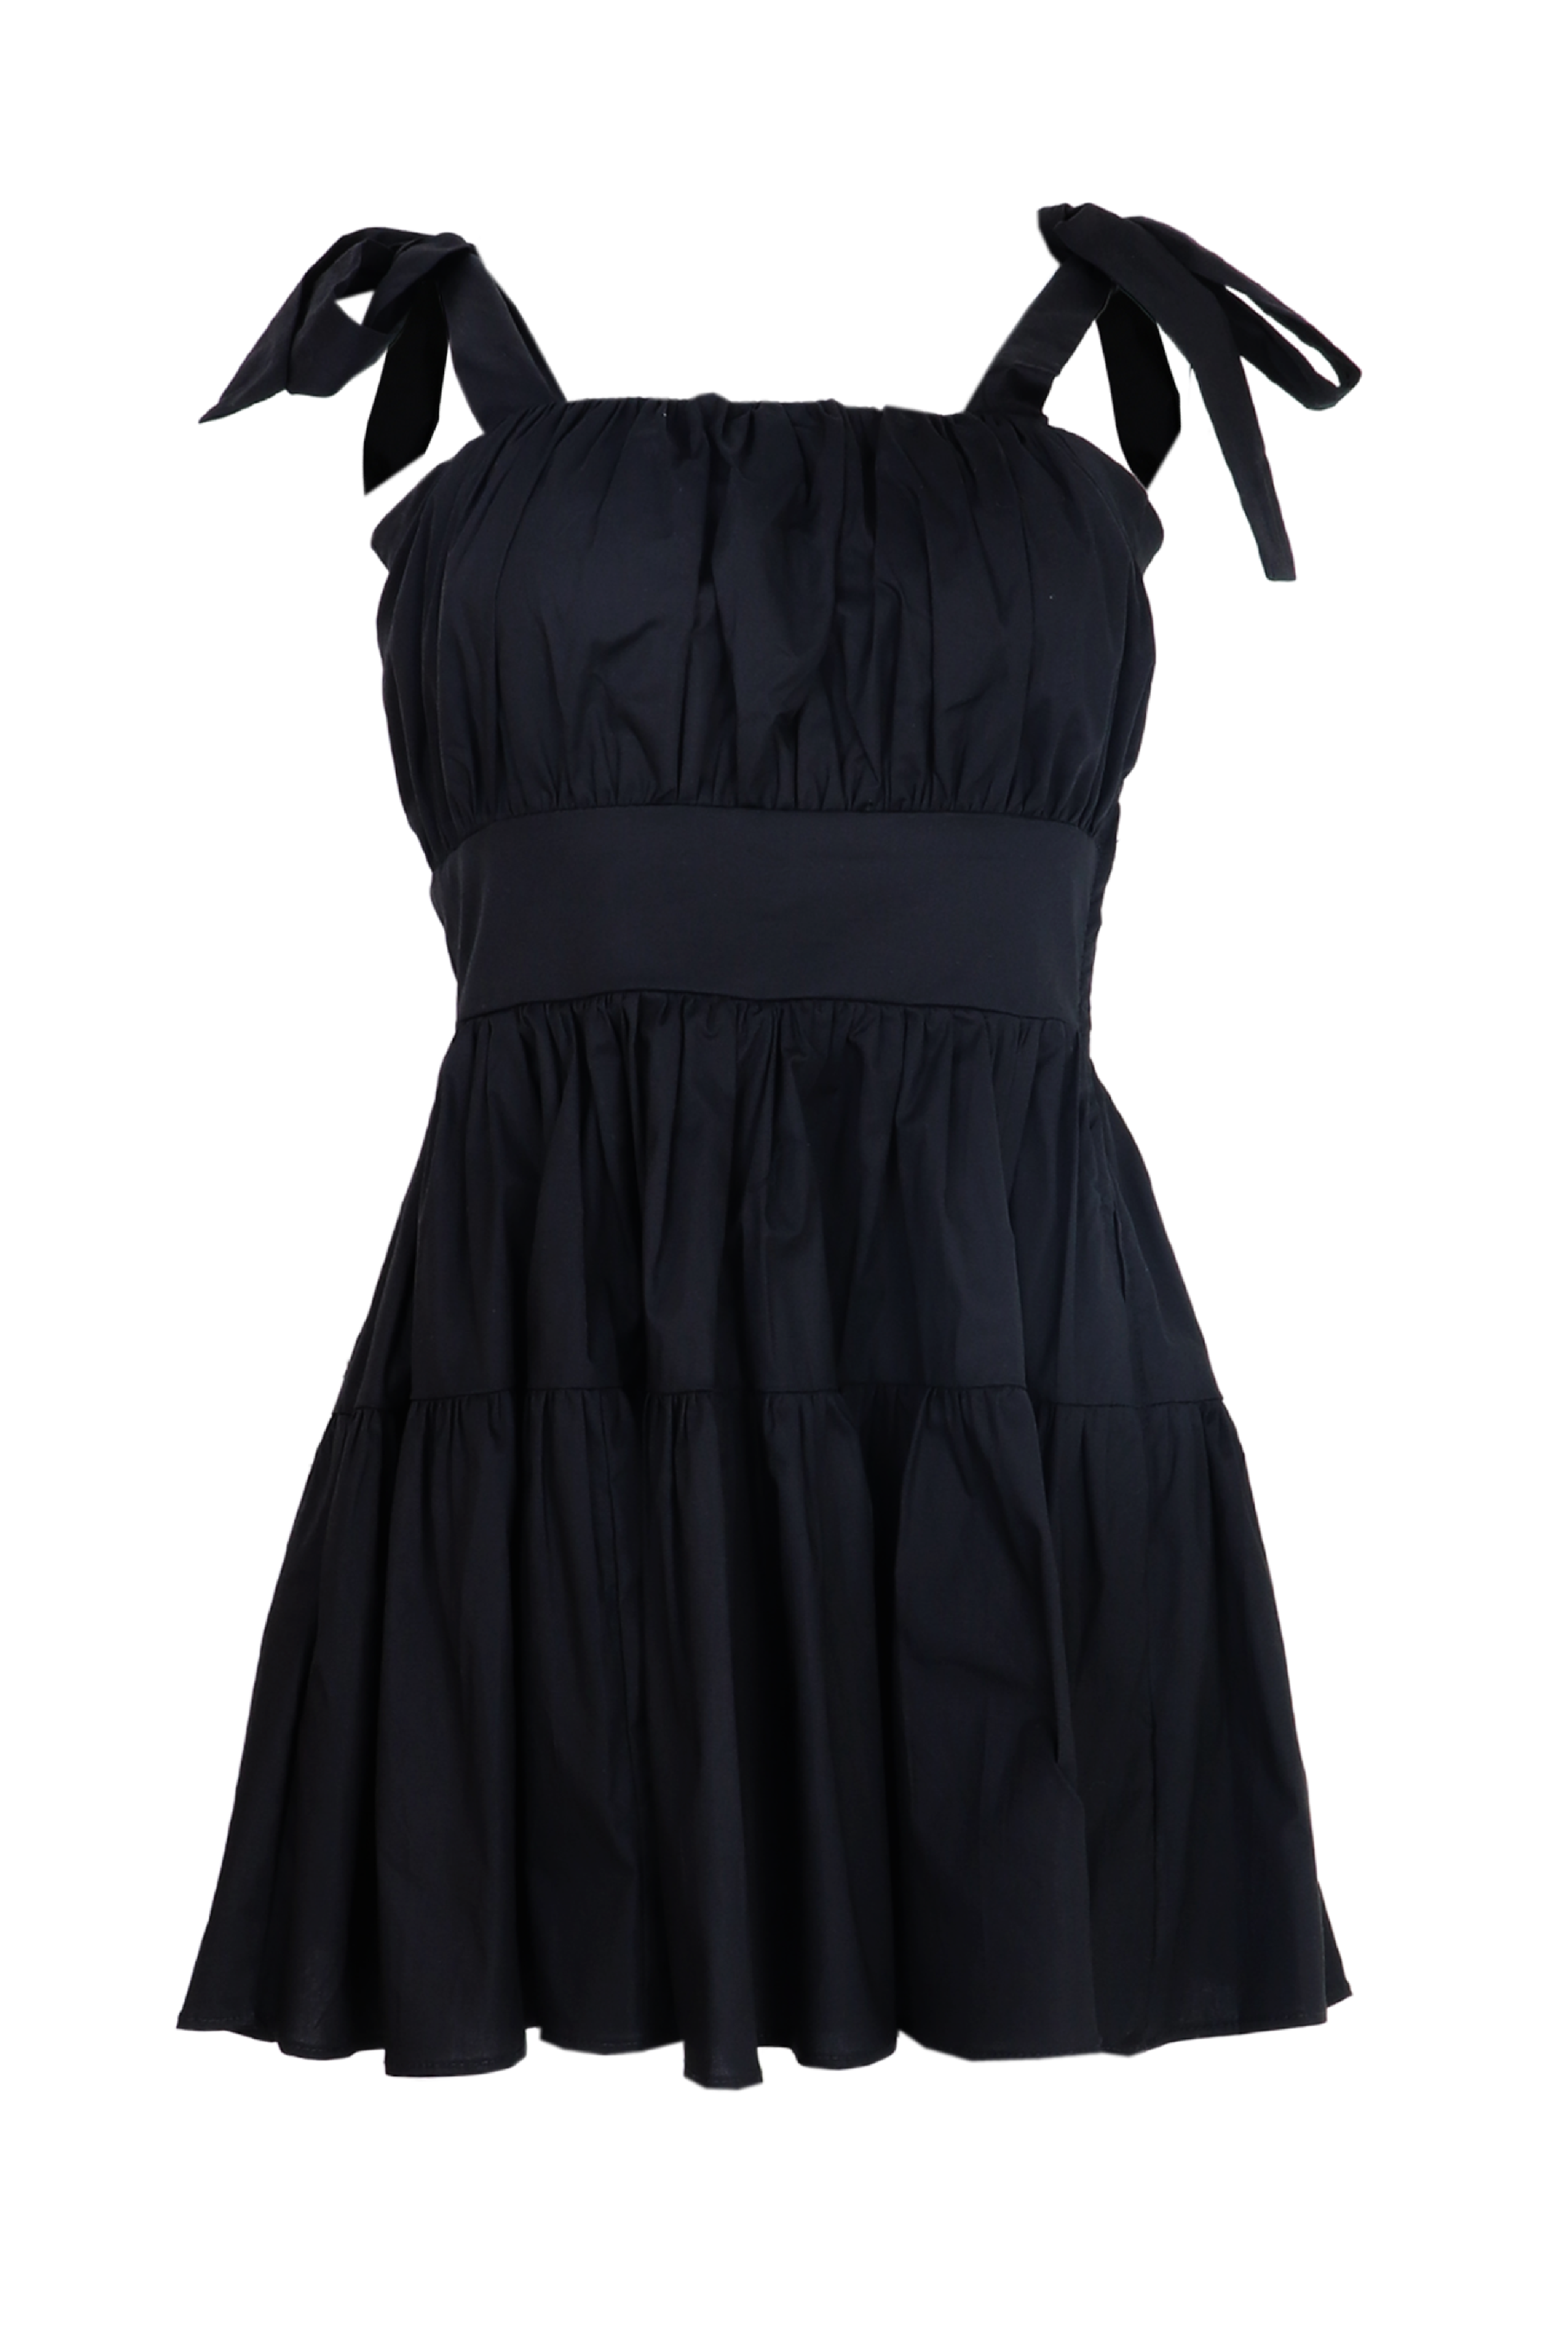 Hermoso vestido corto con recogido en el busto y cortes en la falda color negro